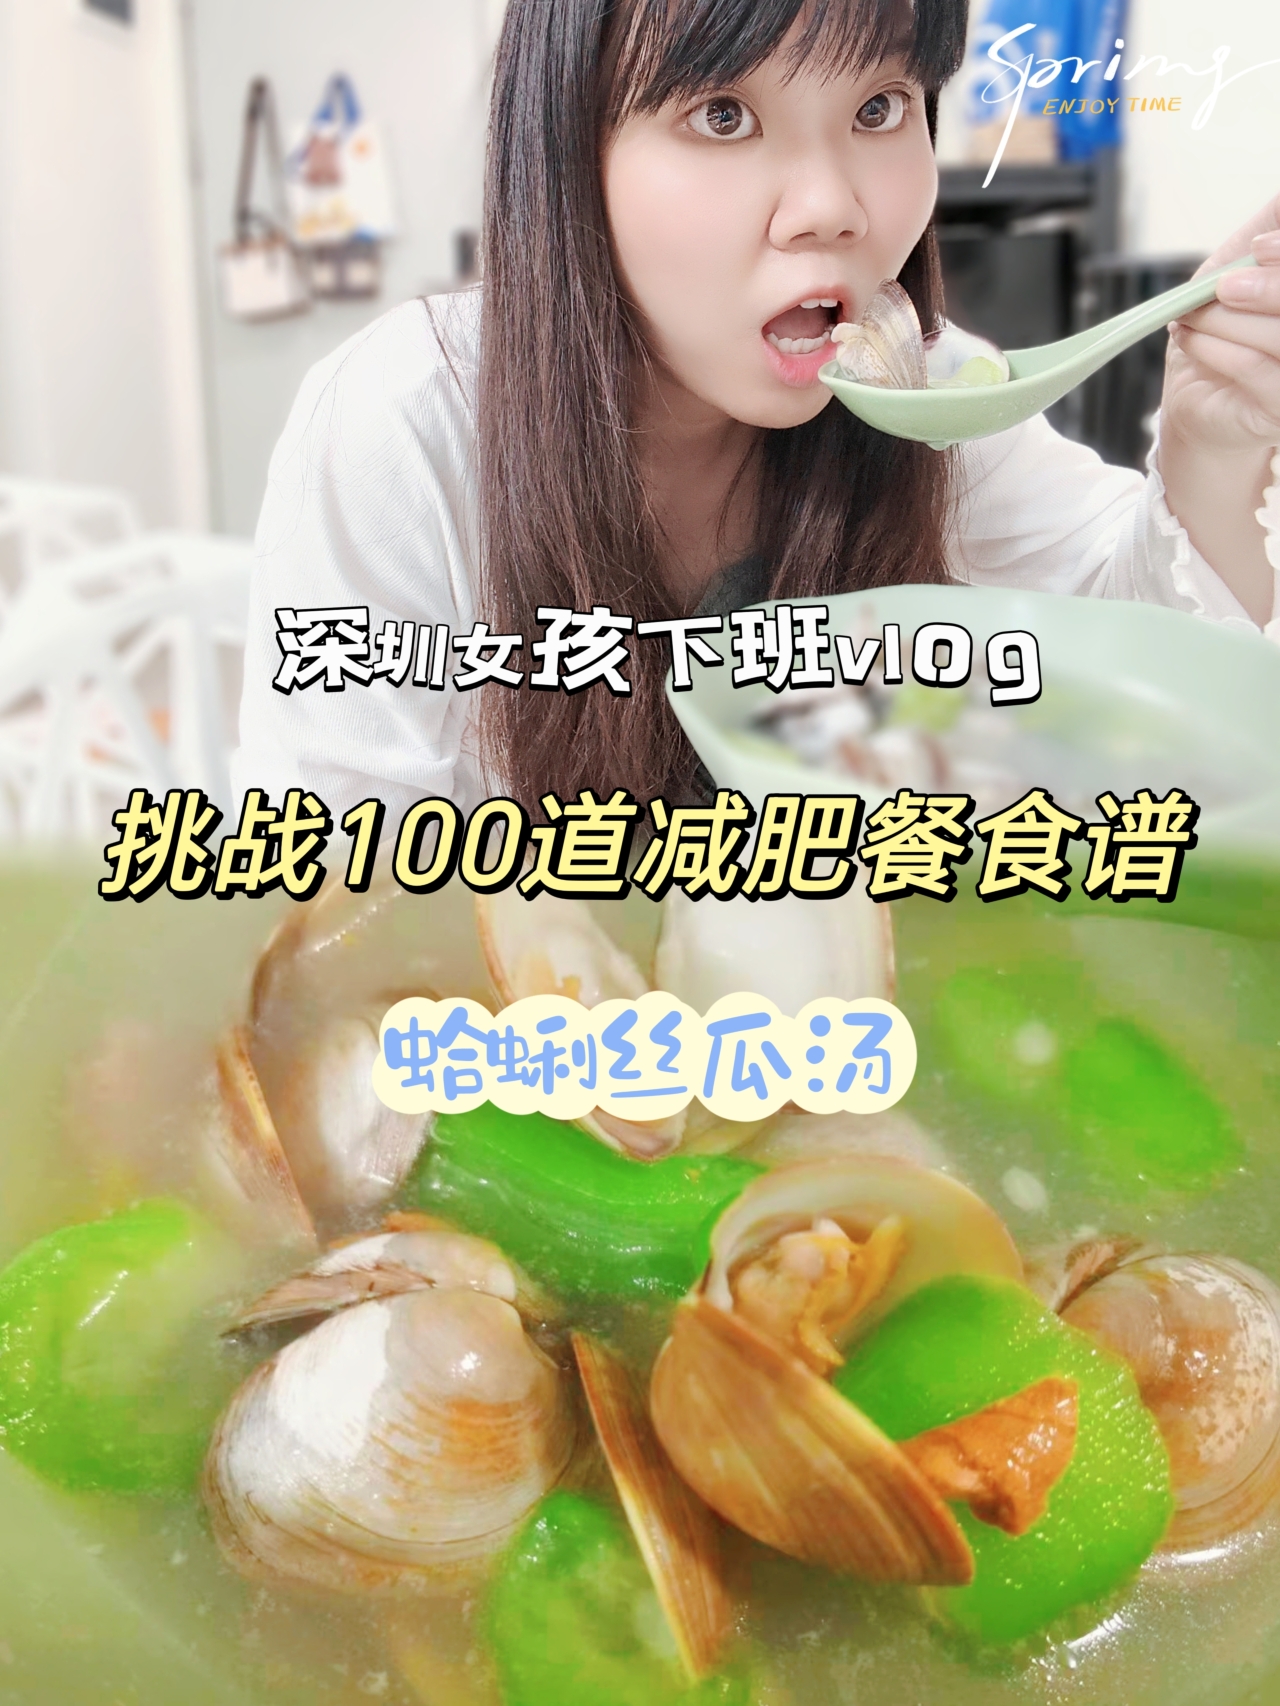 挑战100道减肥餐食谱-蛤蜊丝瓜汤